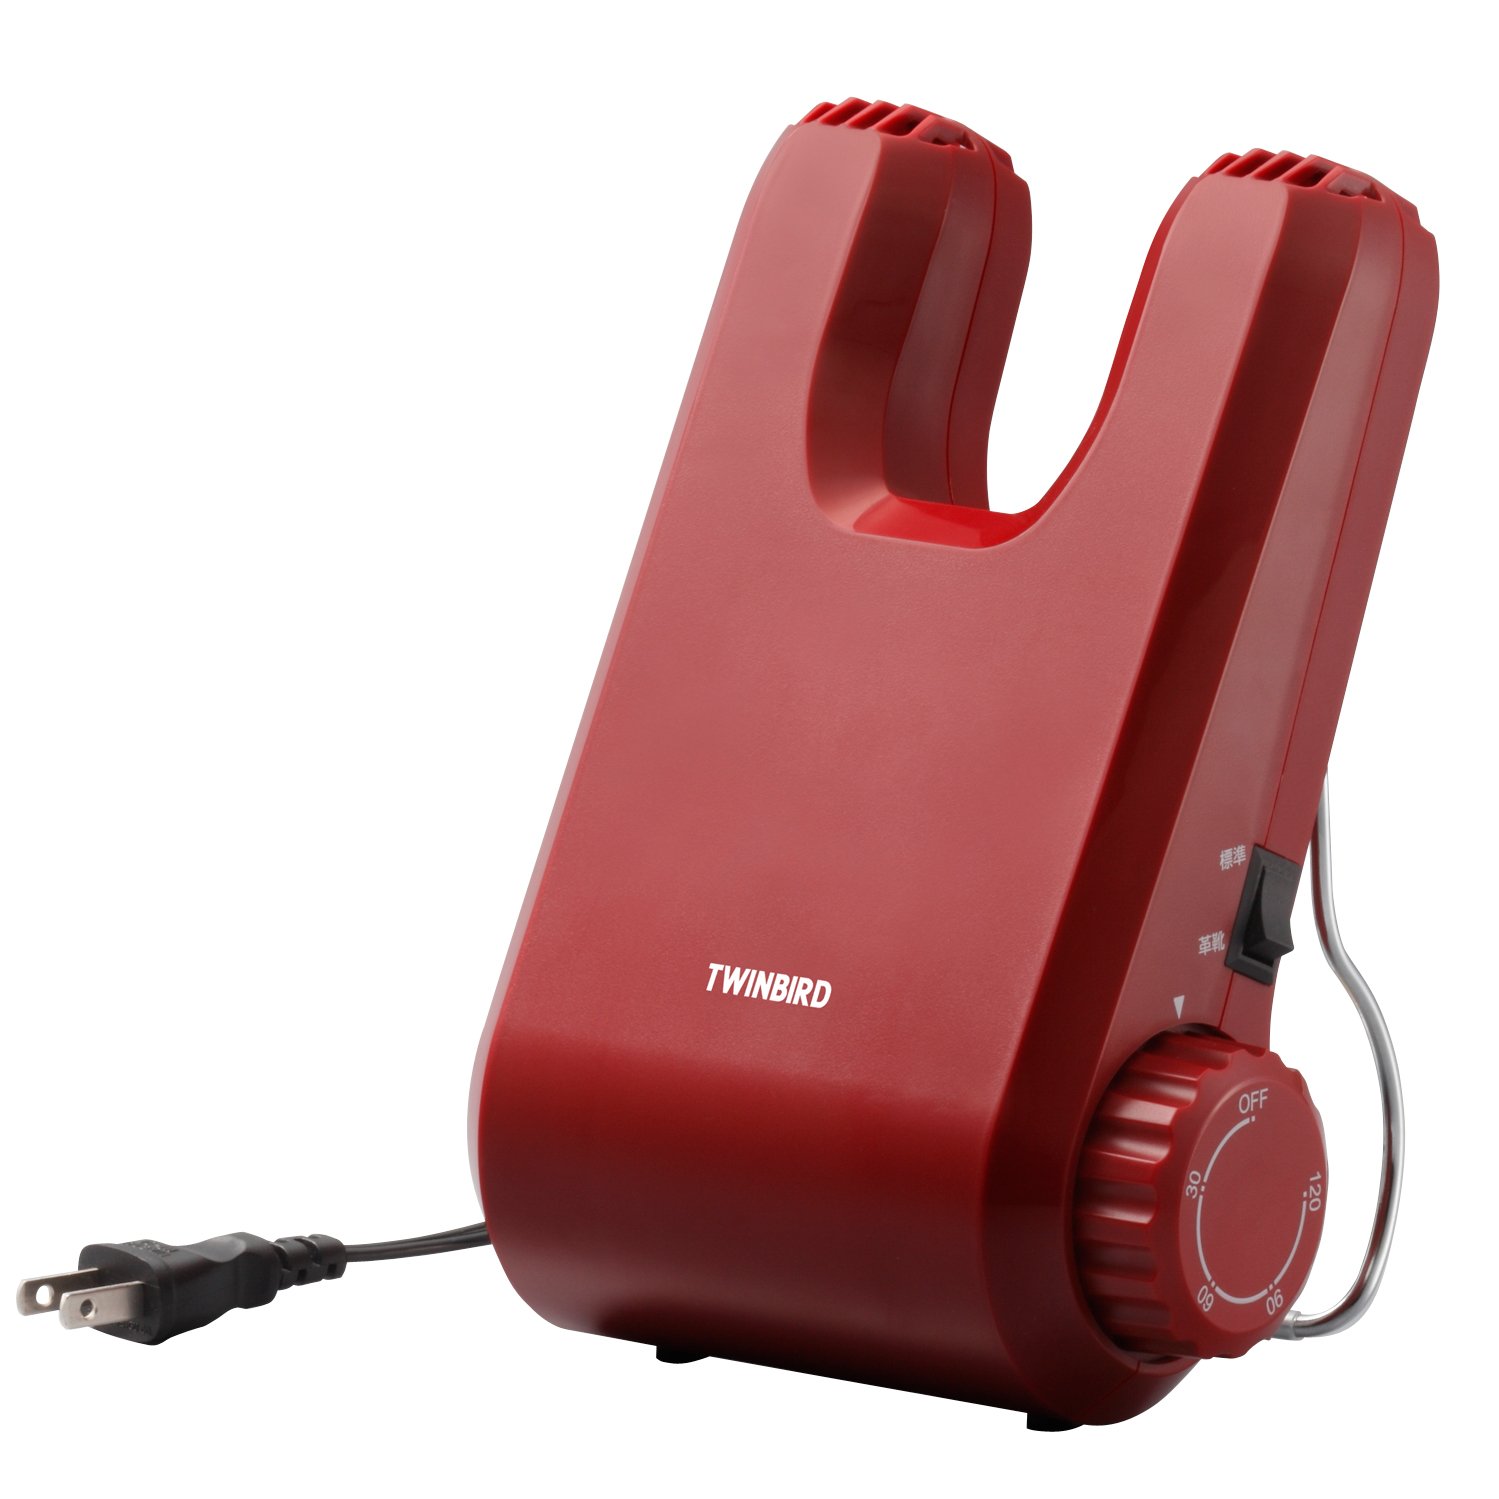 TWINBIRD shoe dryer Red SD-4546R